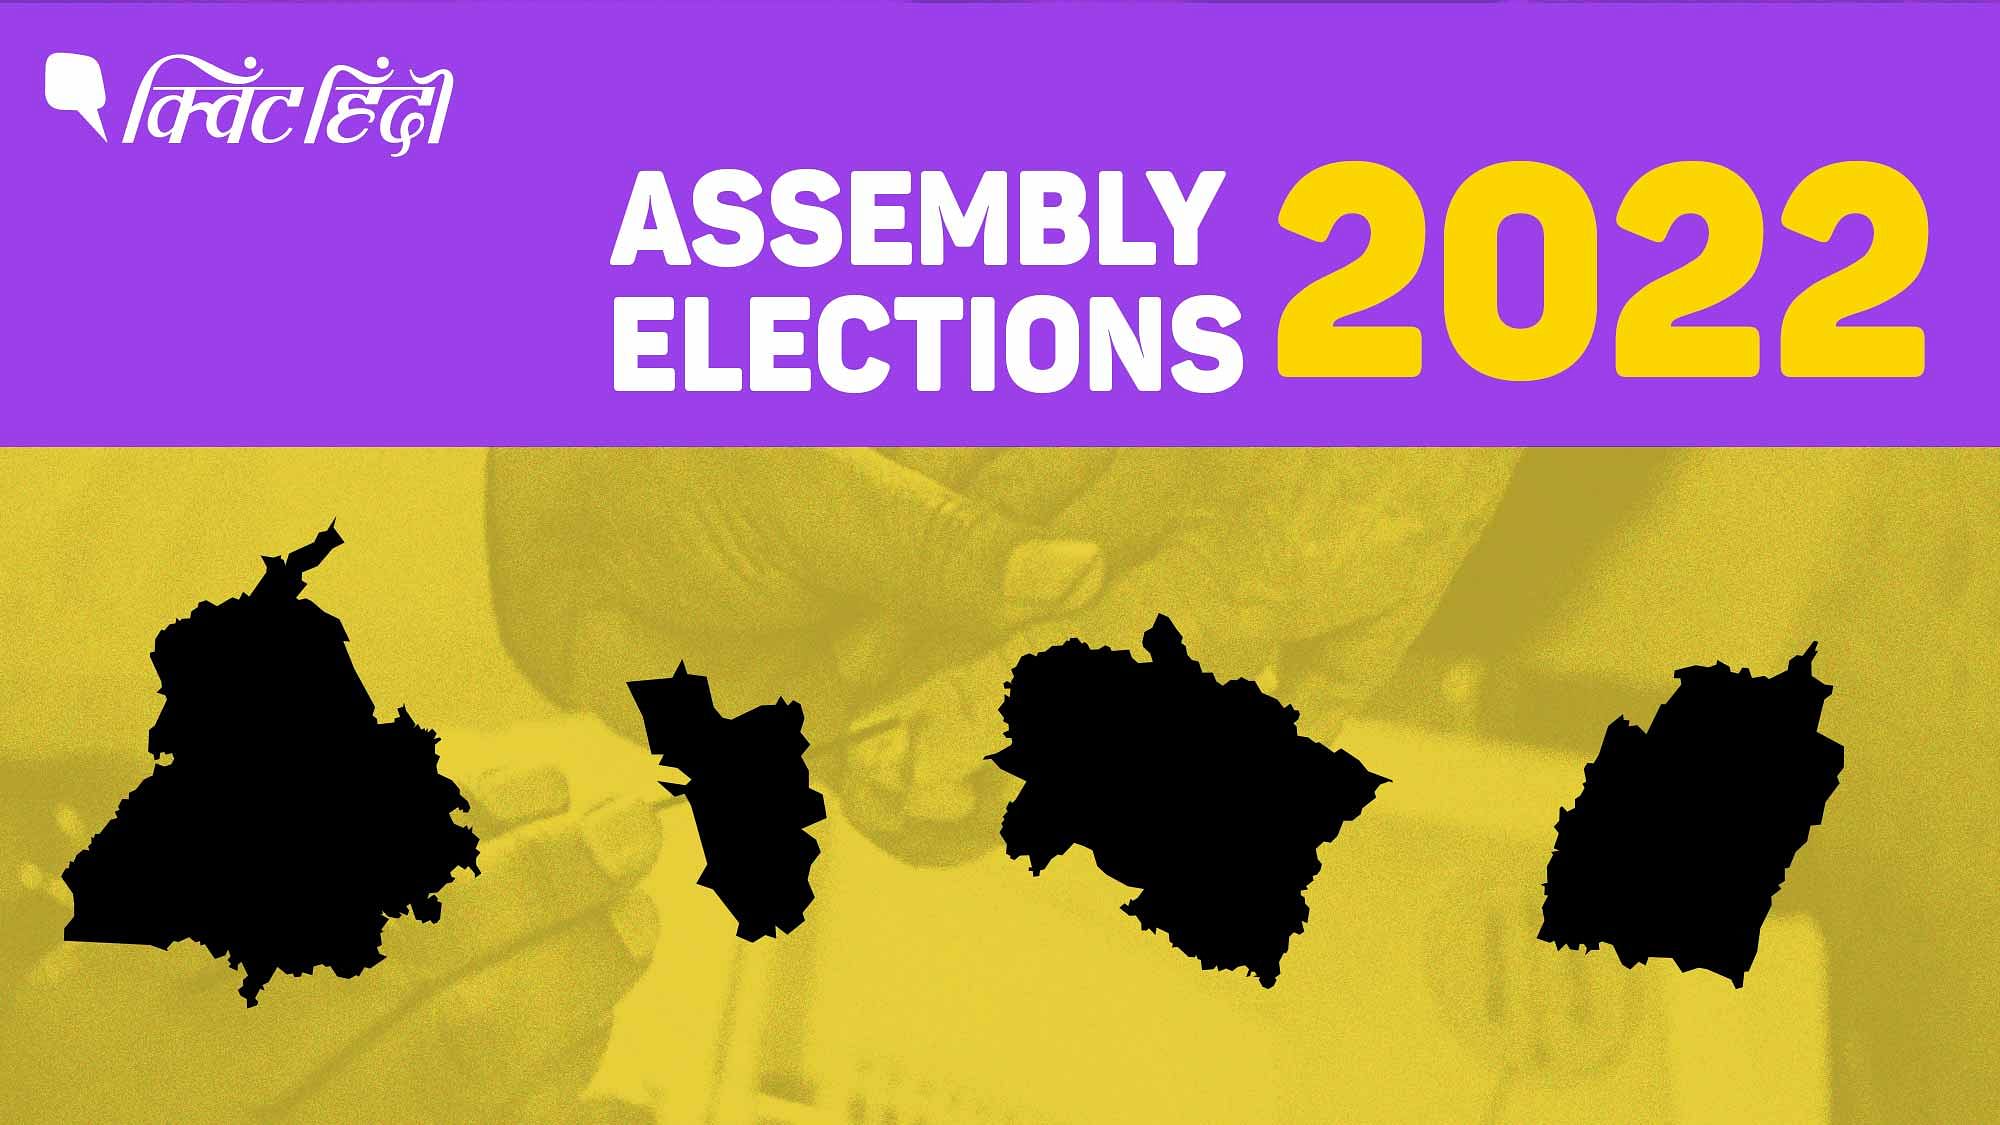 <div class="paragraphs"><p>उत्तराखंड, पंजाब, गोवा और मणिपुर विधानसभा चुनावों के Exit Polls Results से जुड़े लाइव अपडेट्स पढ़िए</p></div>